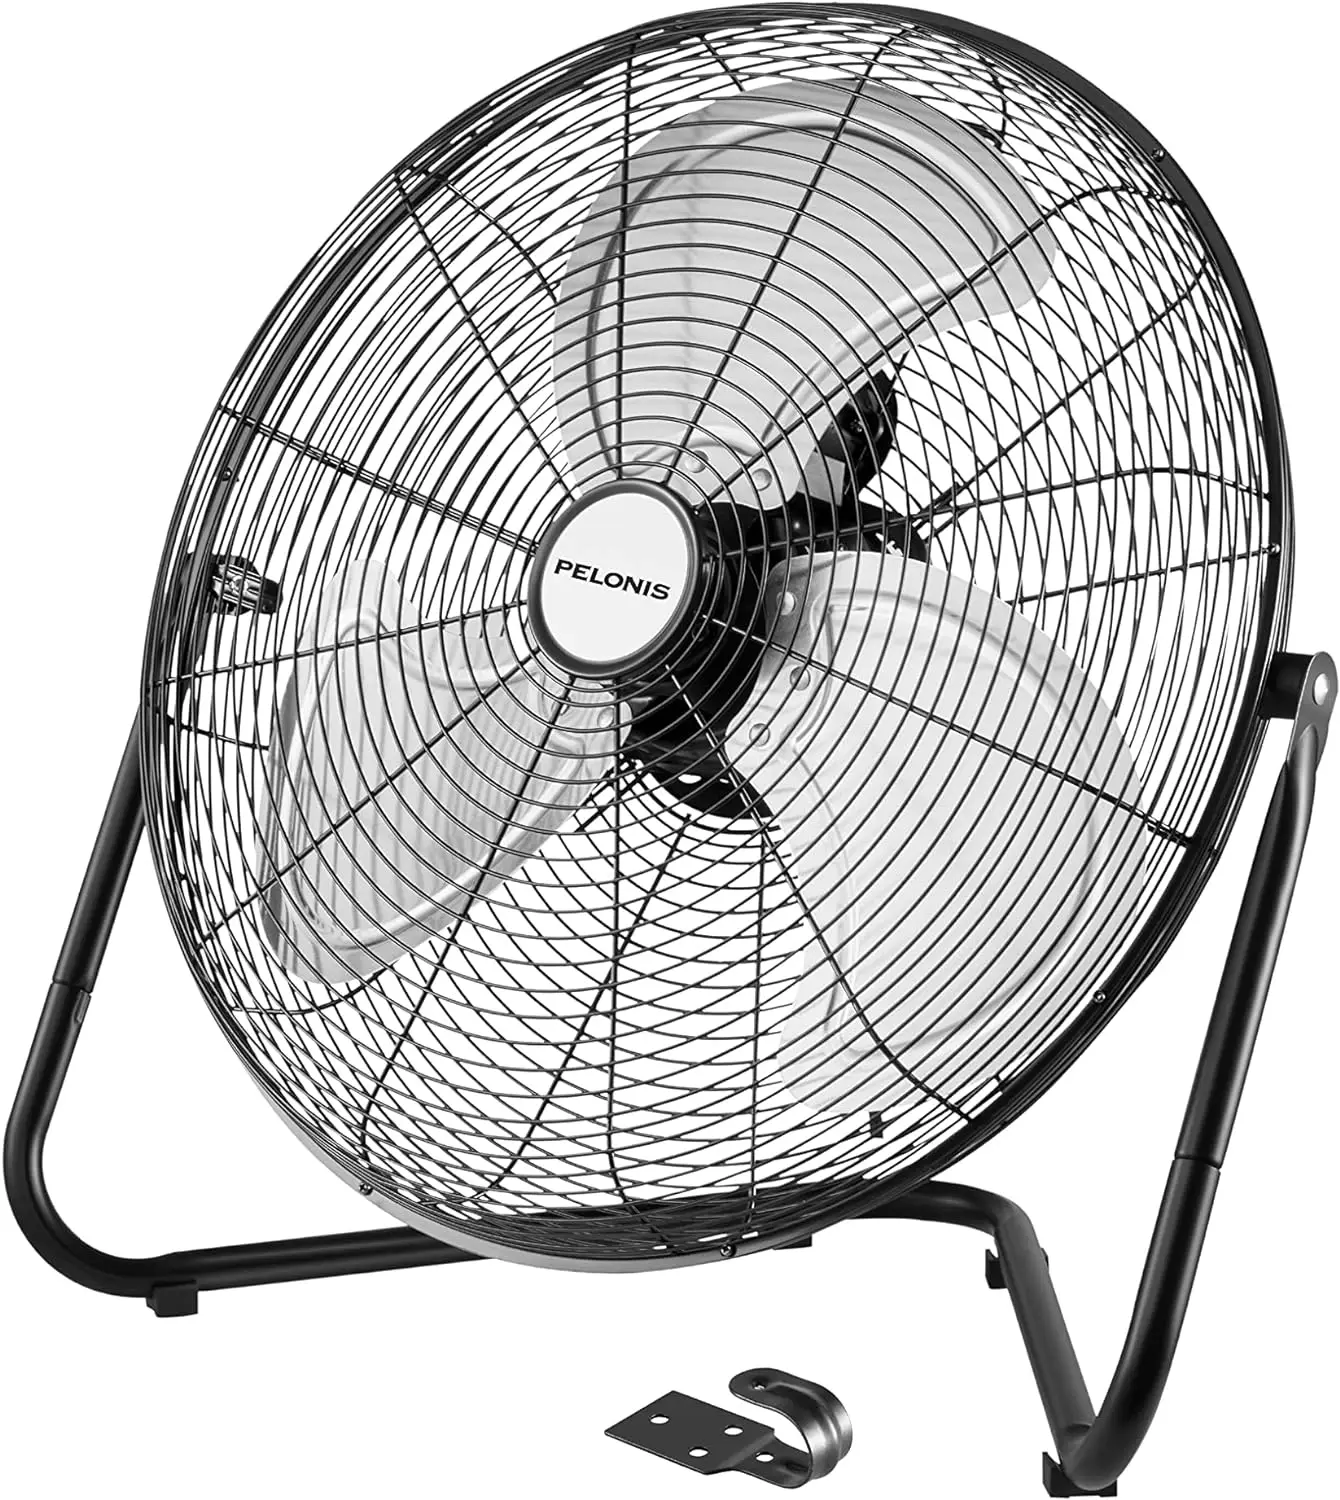 

Pelonis Fan 20 Inch Floor Fan | Heavy Duty All Metal High Velocity Floor Fan with 3-Speeds| Adjustable Tilting Head